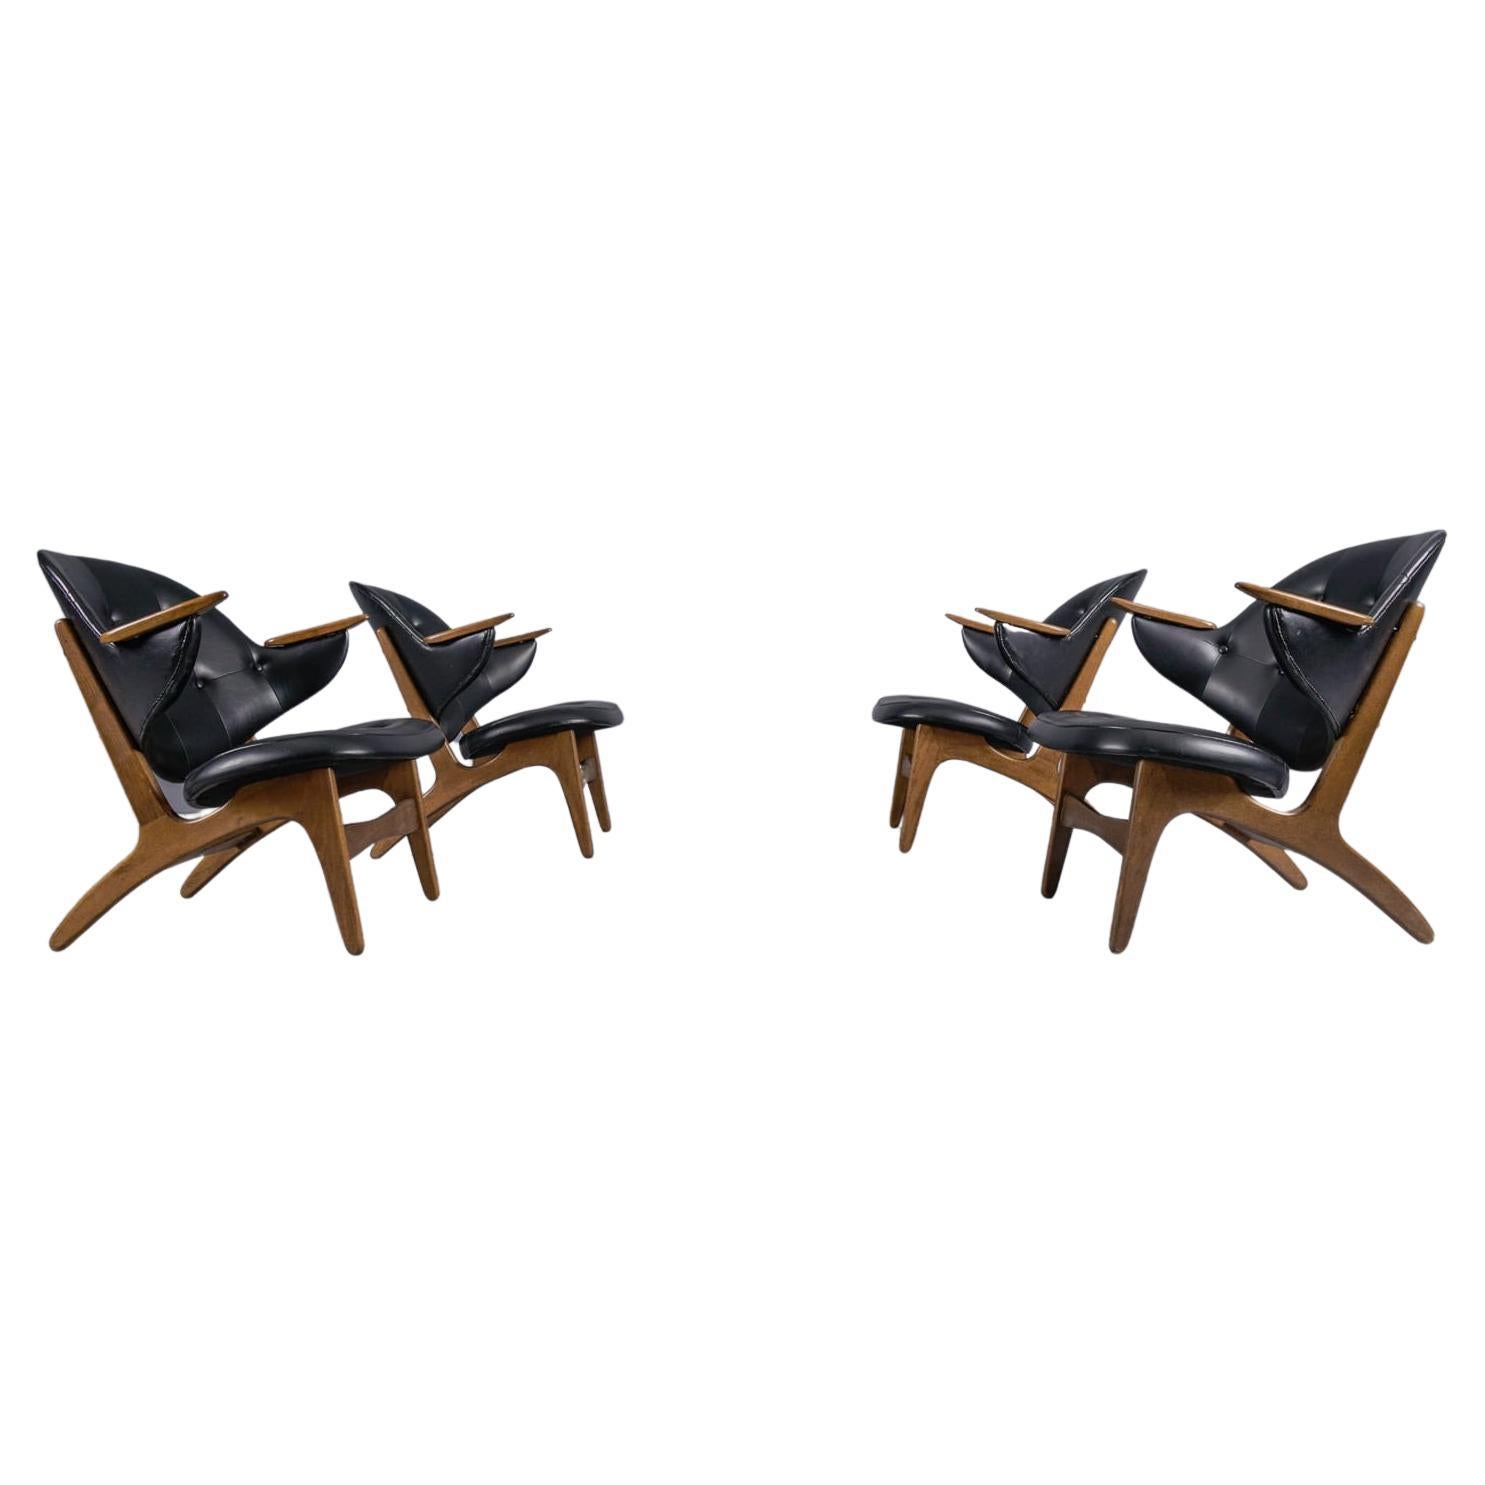 Satz von 4 seltenen dänischen Easy Chairs, Modell 33, entworfen von Carl Edward Matthes, 1950er Jahre